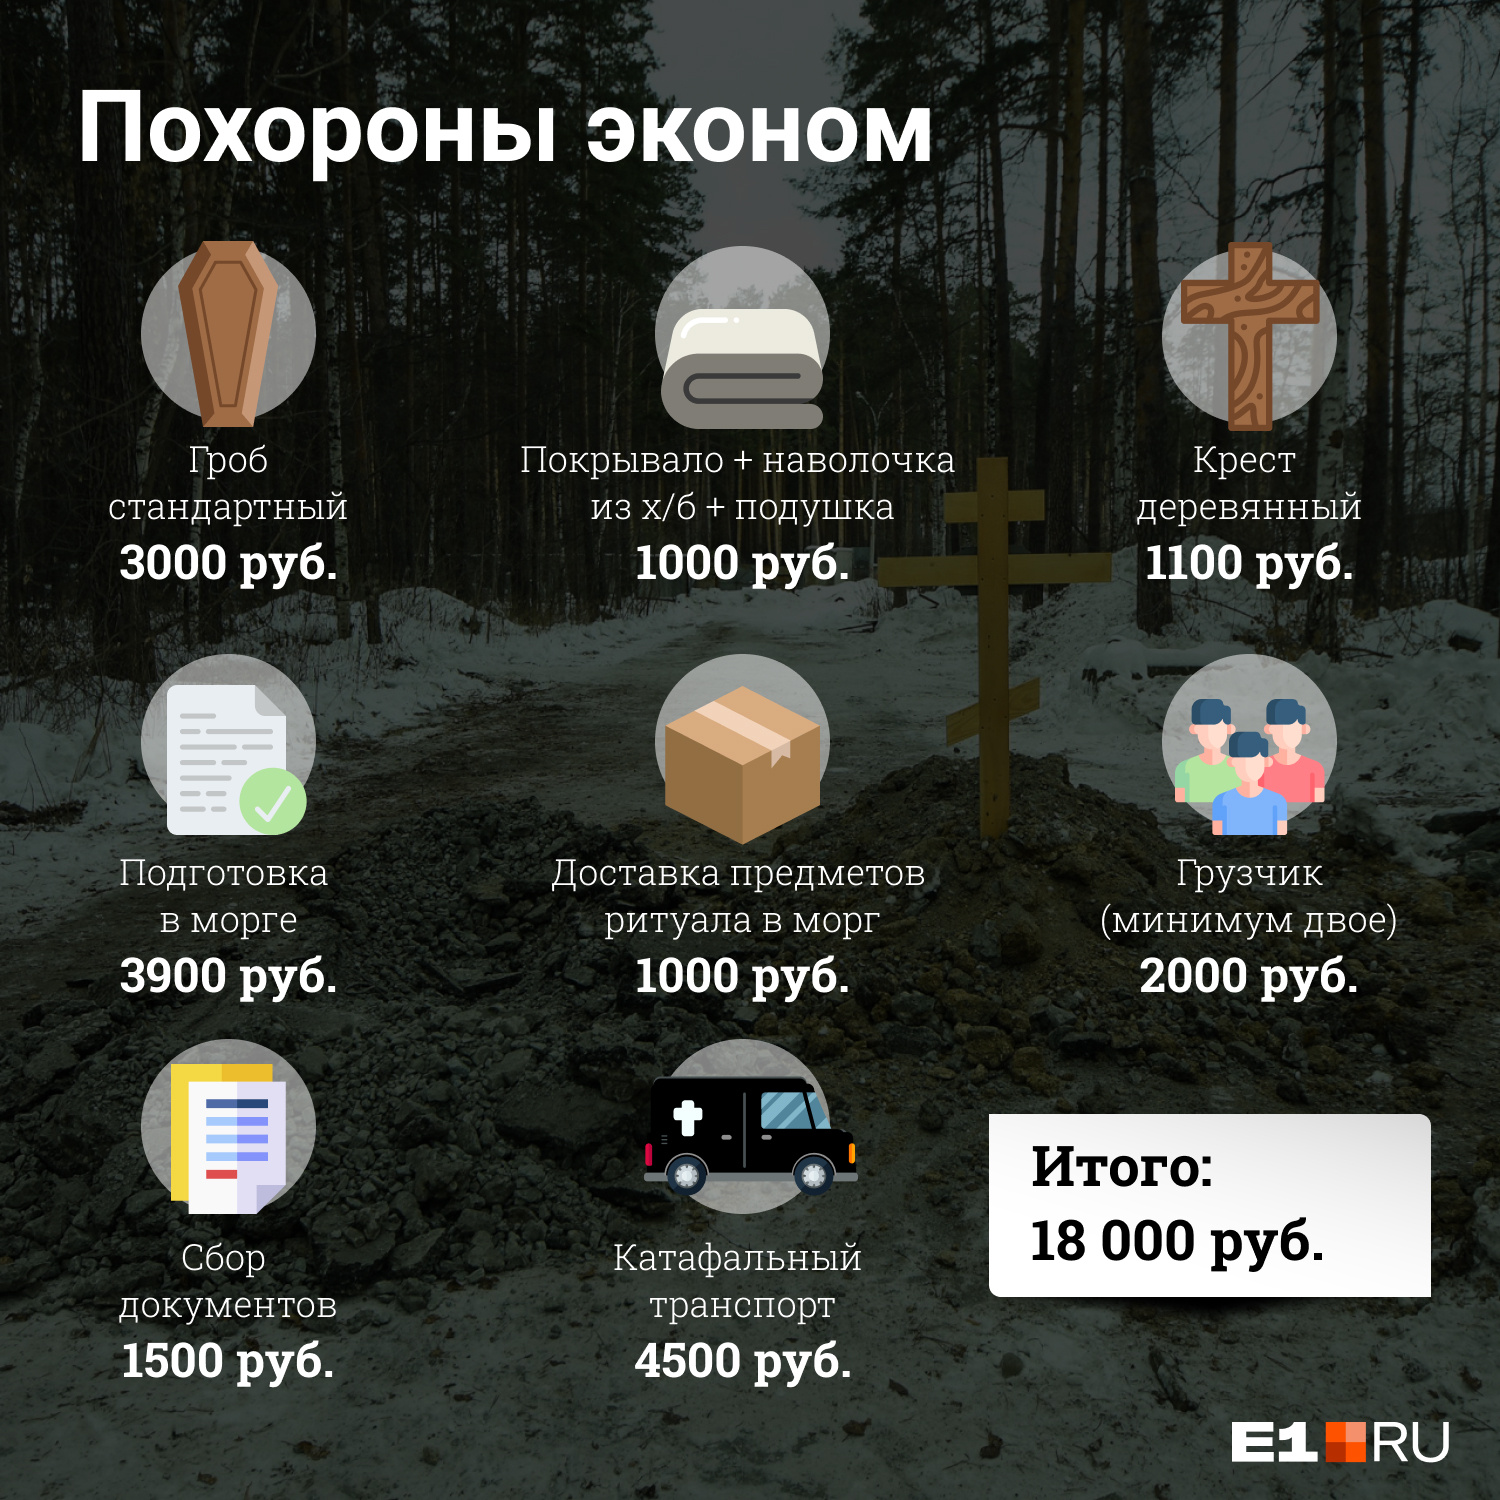 Самые дешевые похороны обойдутся минимум в 18 тысяч рублей